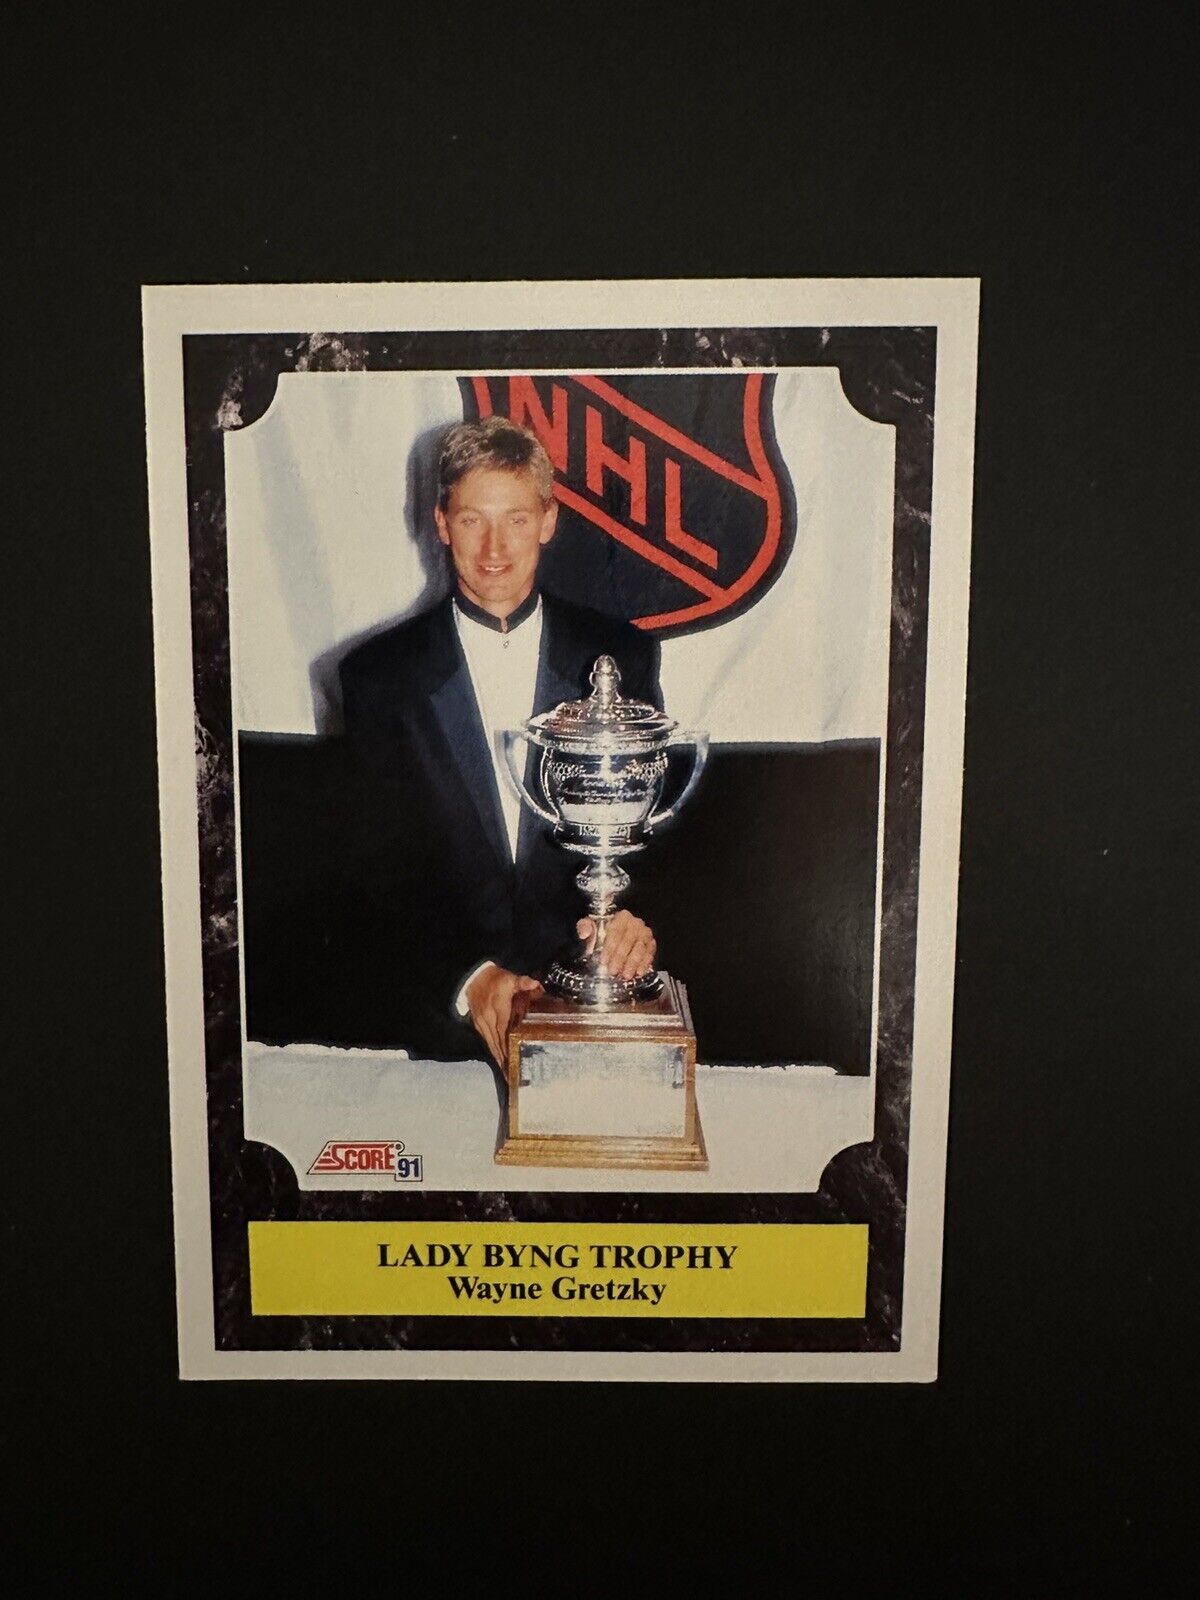 1991-92 Score Canadian #324 Wayne Gretzky - Lady Byng Trophy